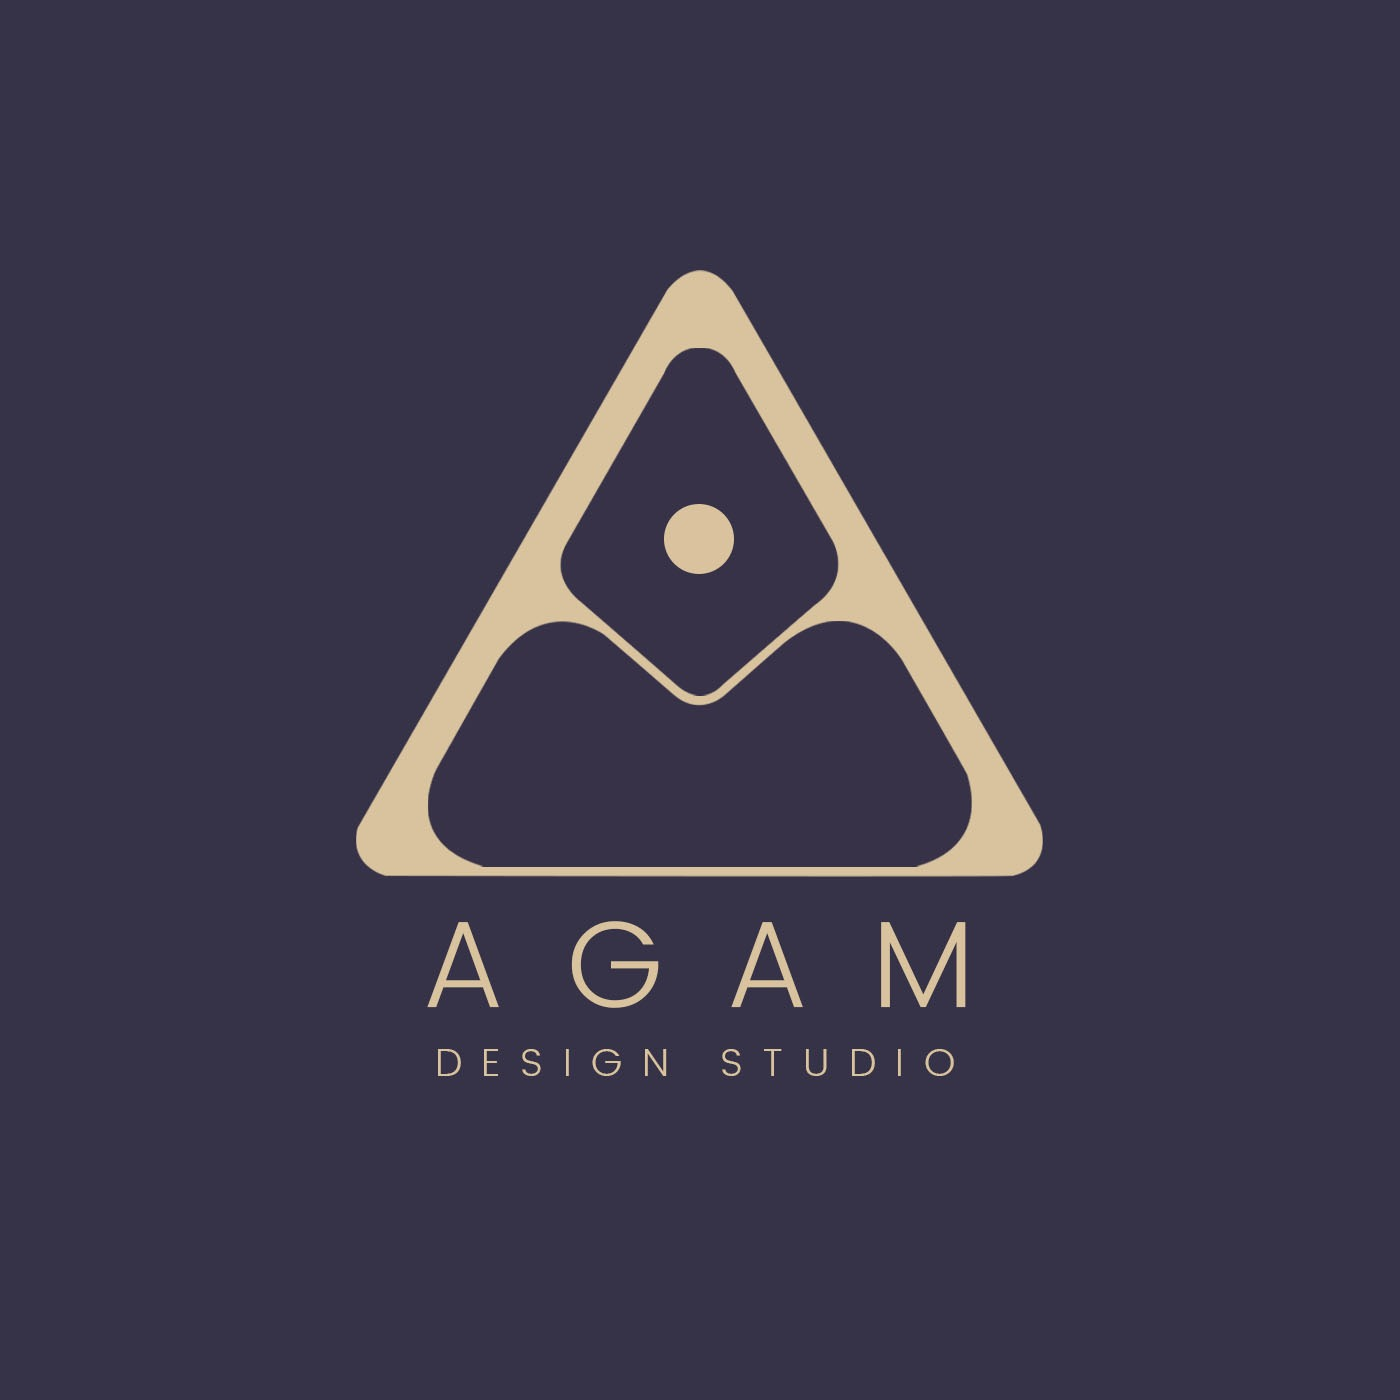 Agam Design Studio